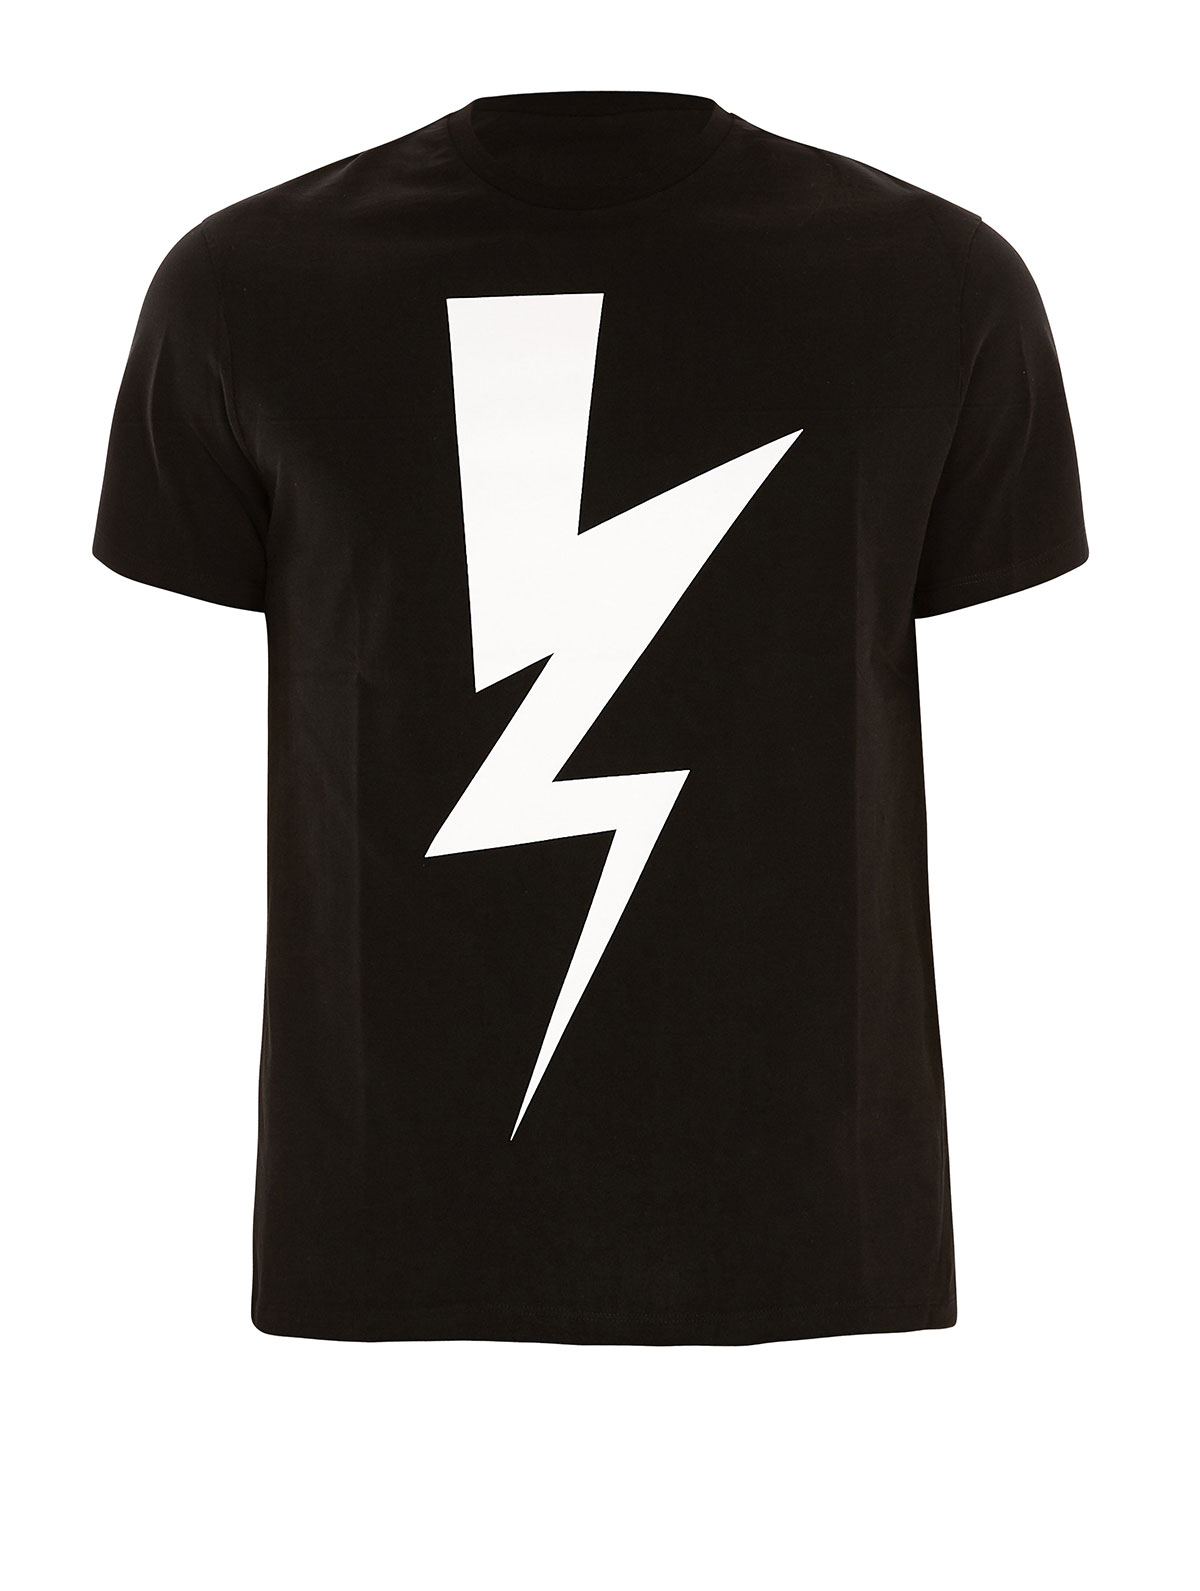 Neil Barrett T Shirts Thunderbolt T Shirt 00000095103f00s011 